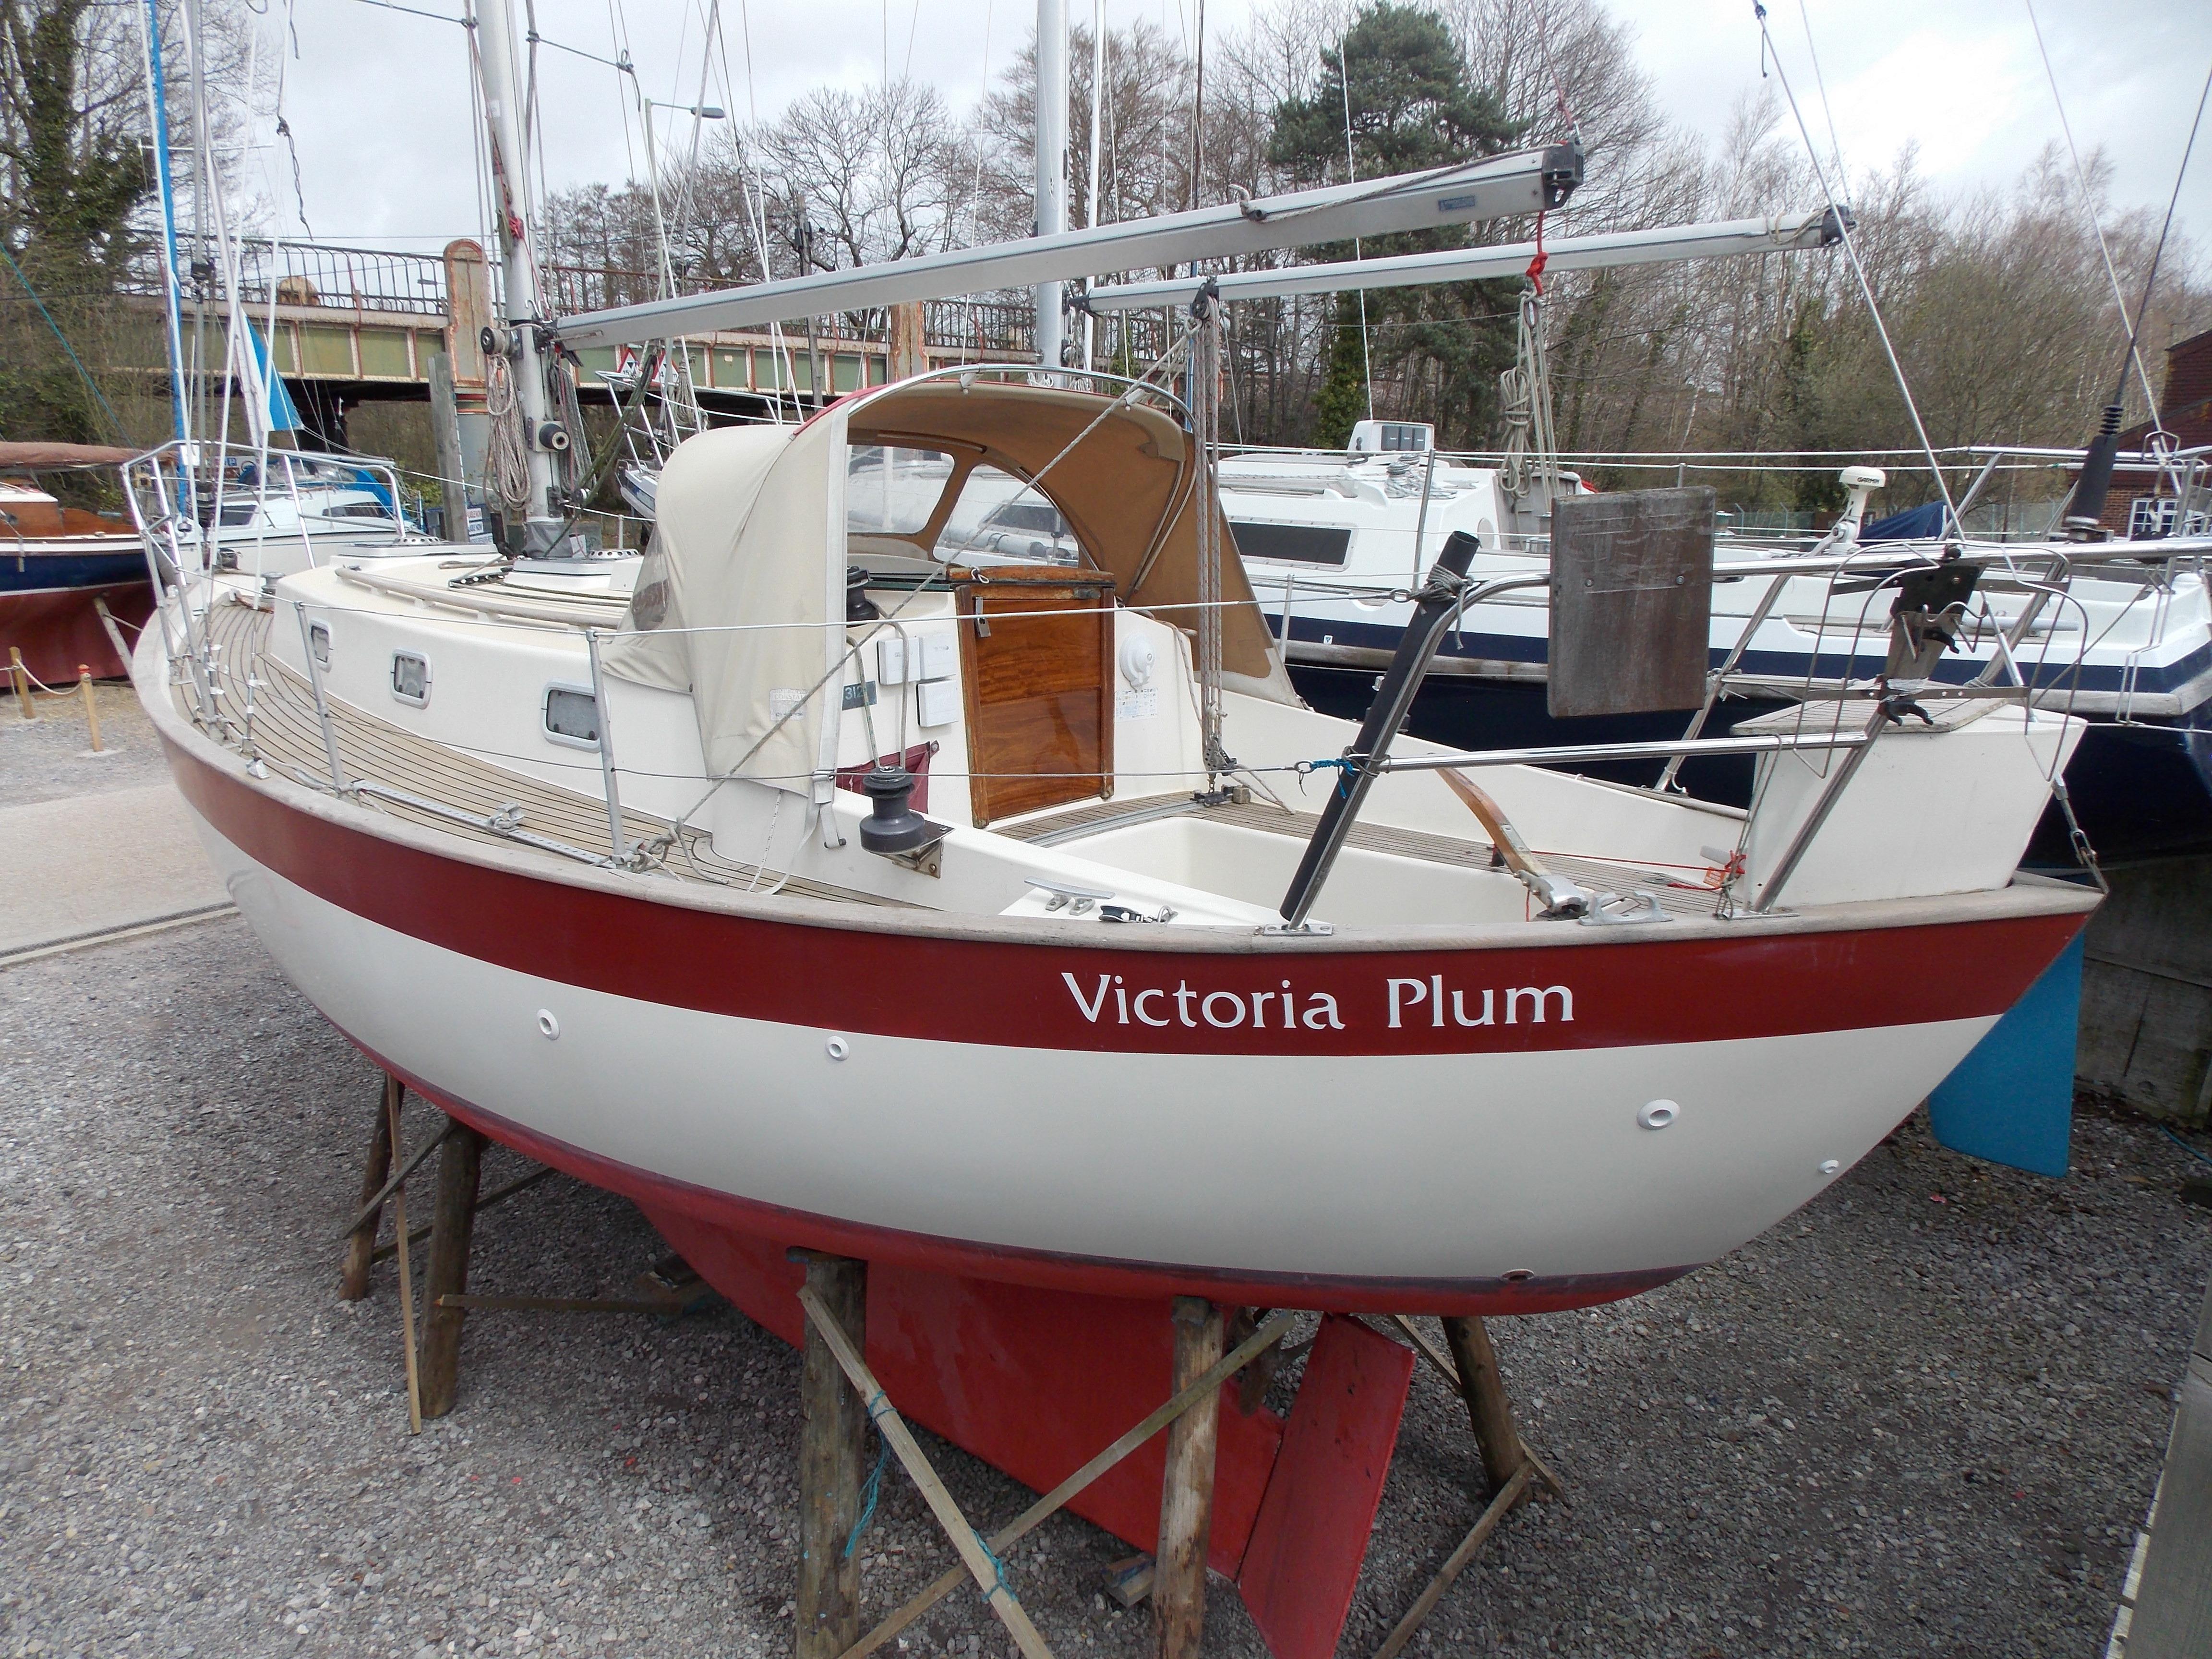 Victoria 30, Deacons Boatyard, Hampshire